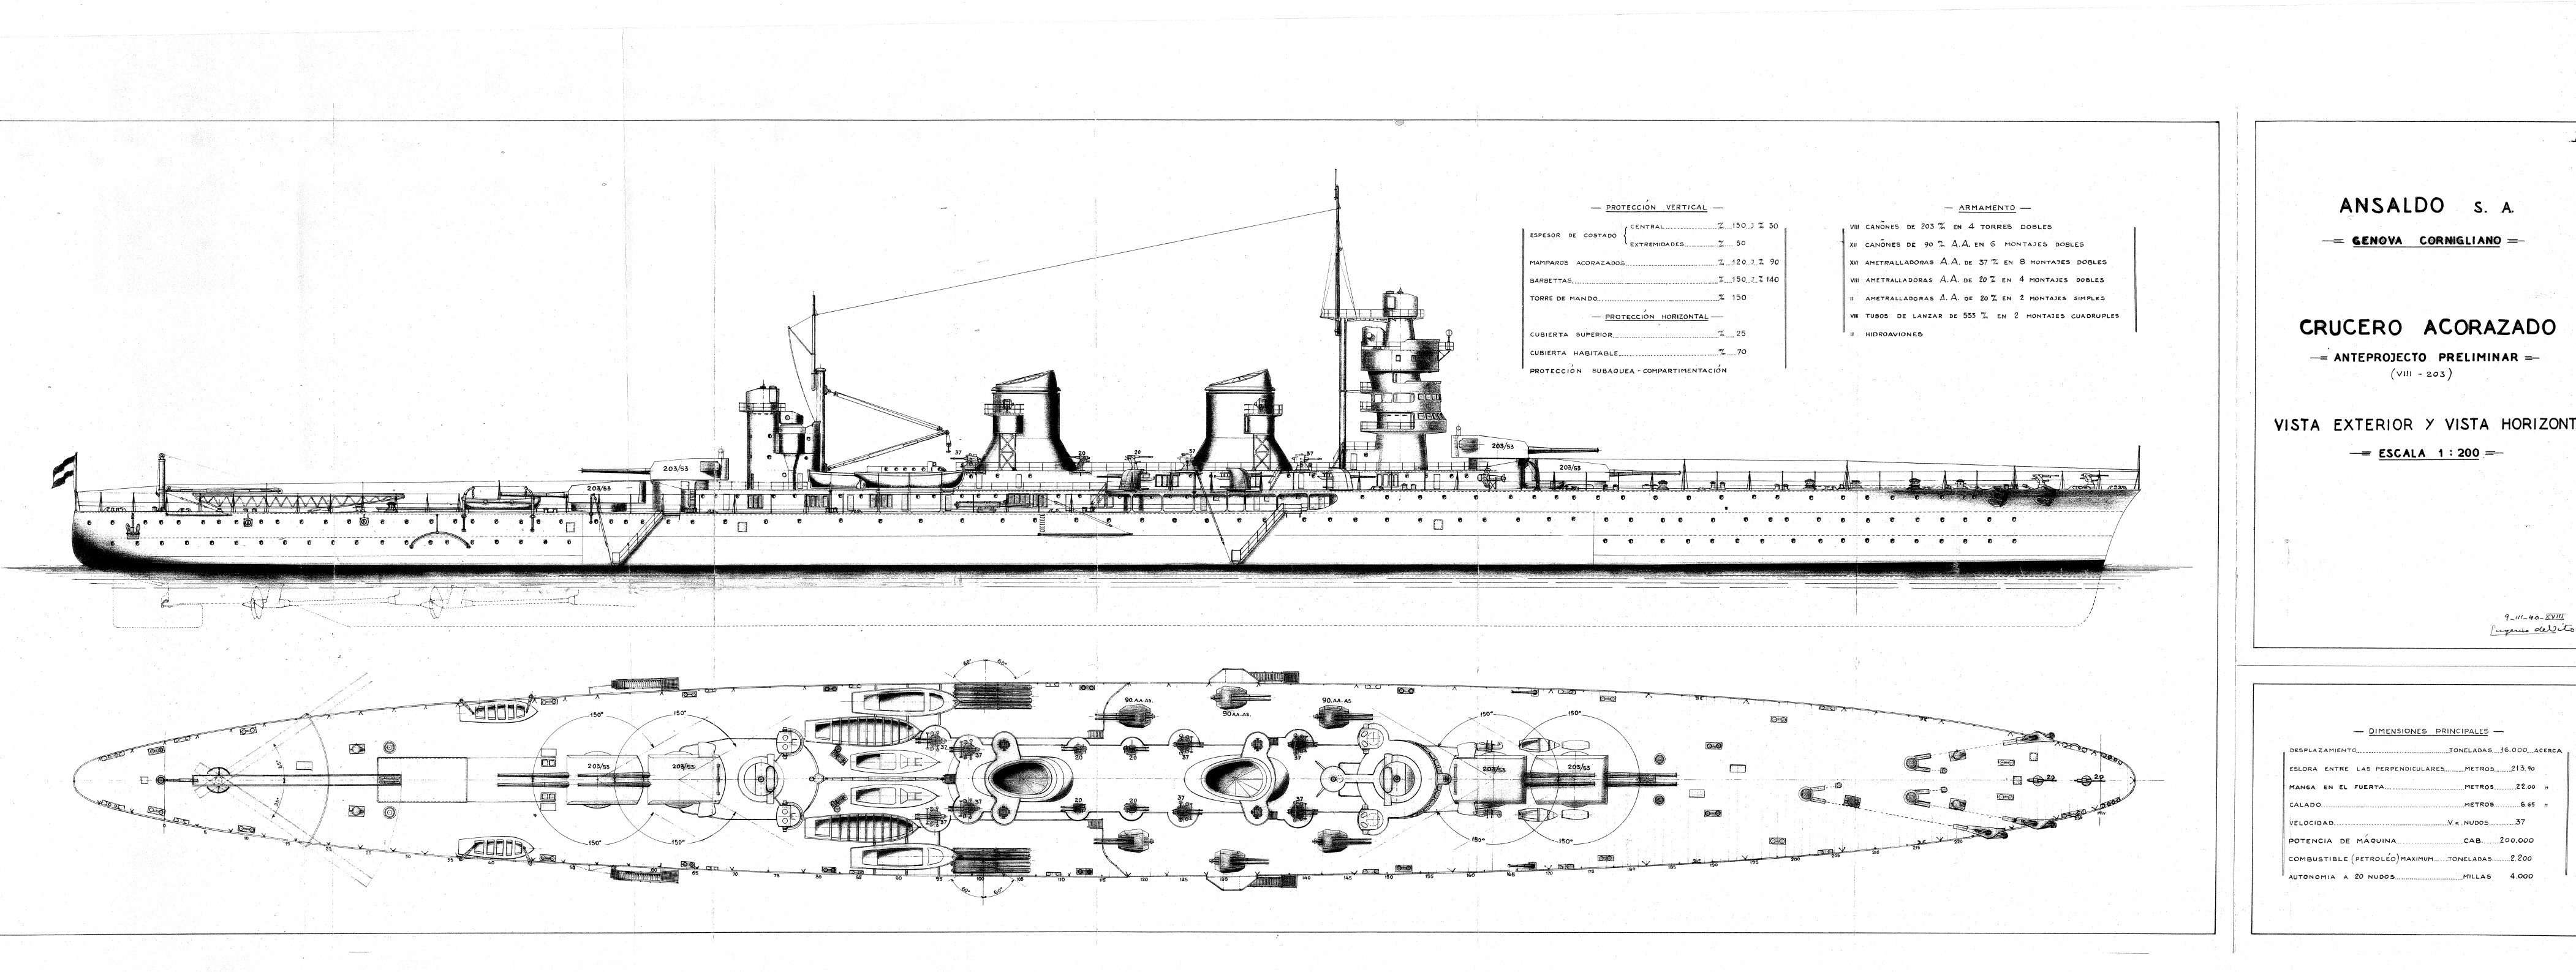 Ansaldo heavy cruiser for Spain variant 1